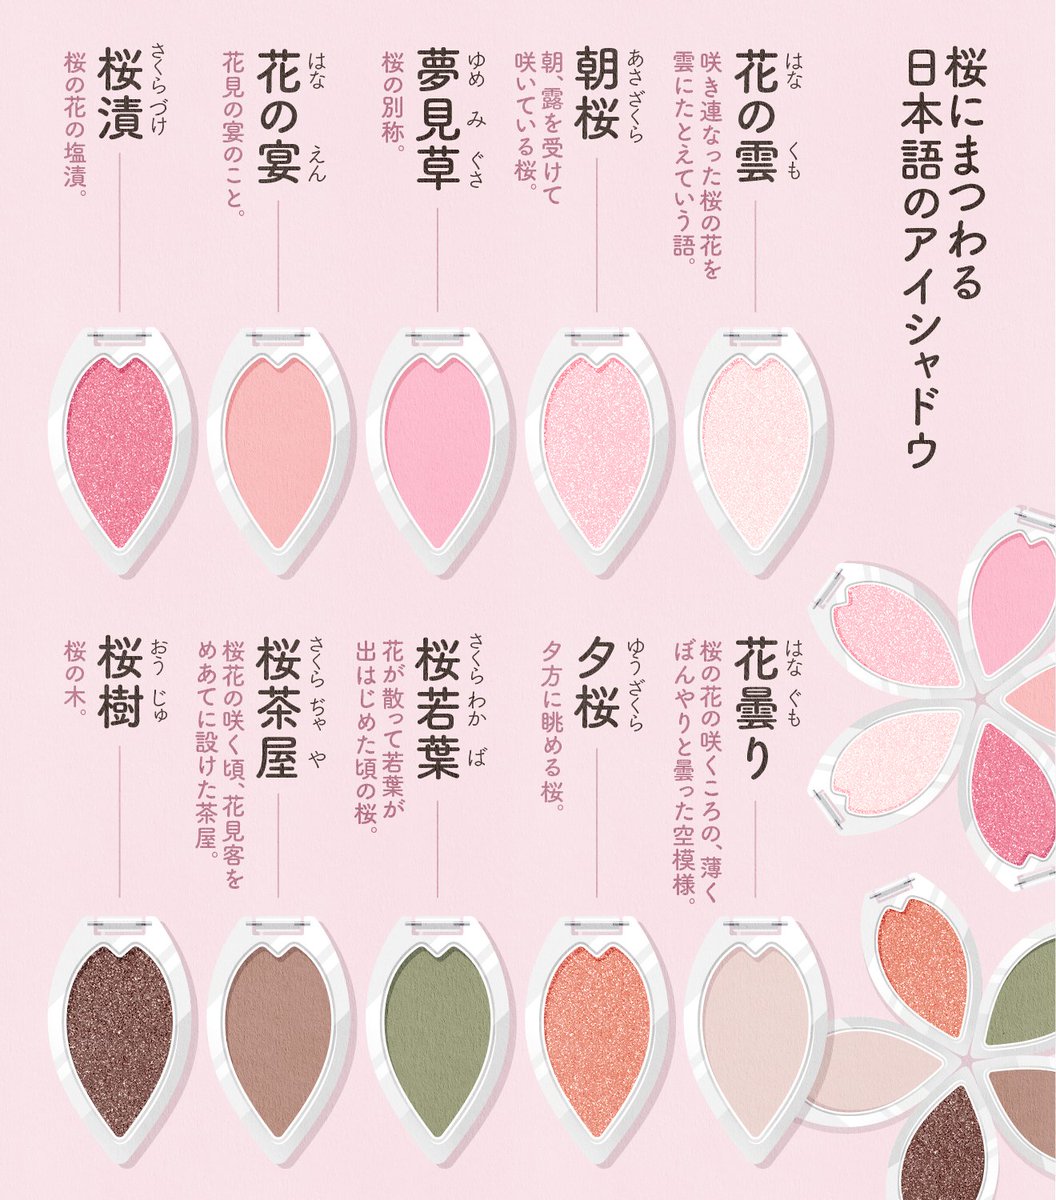 桜にまつわる日本語の単色アイシャドウ🌸
５つ集めたら桜の形に🌸